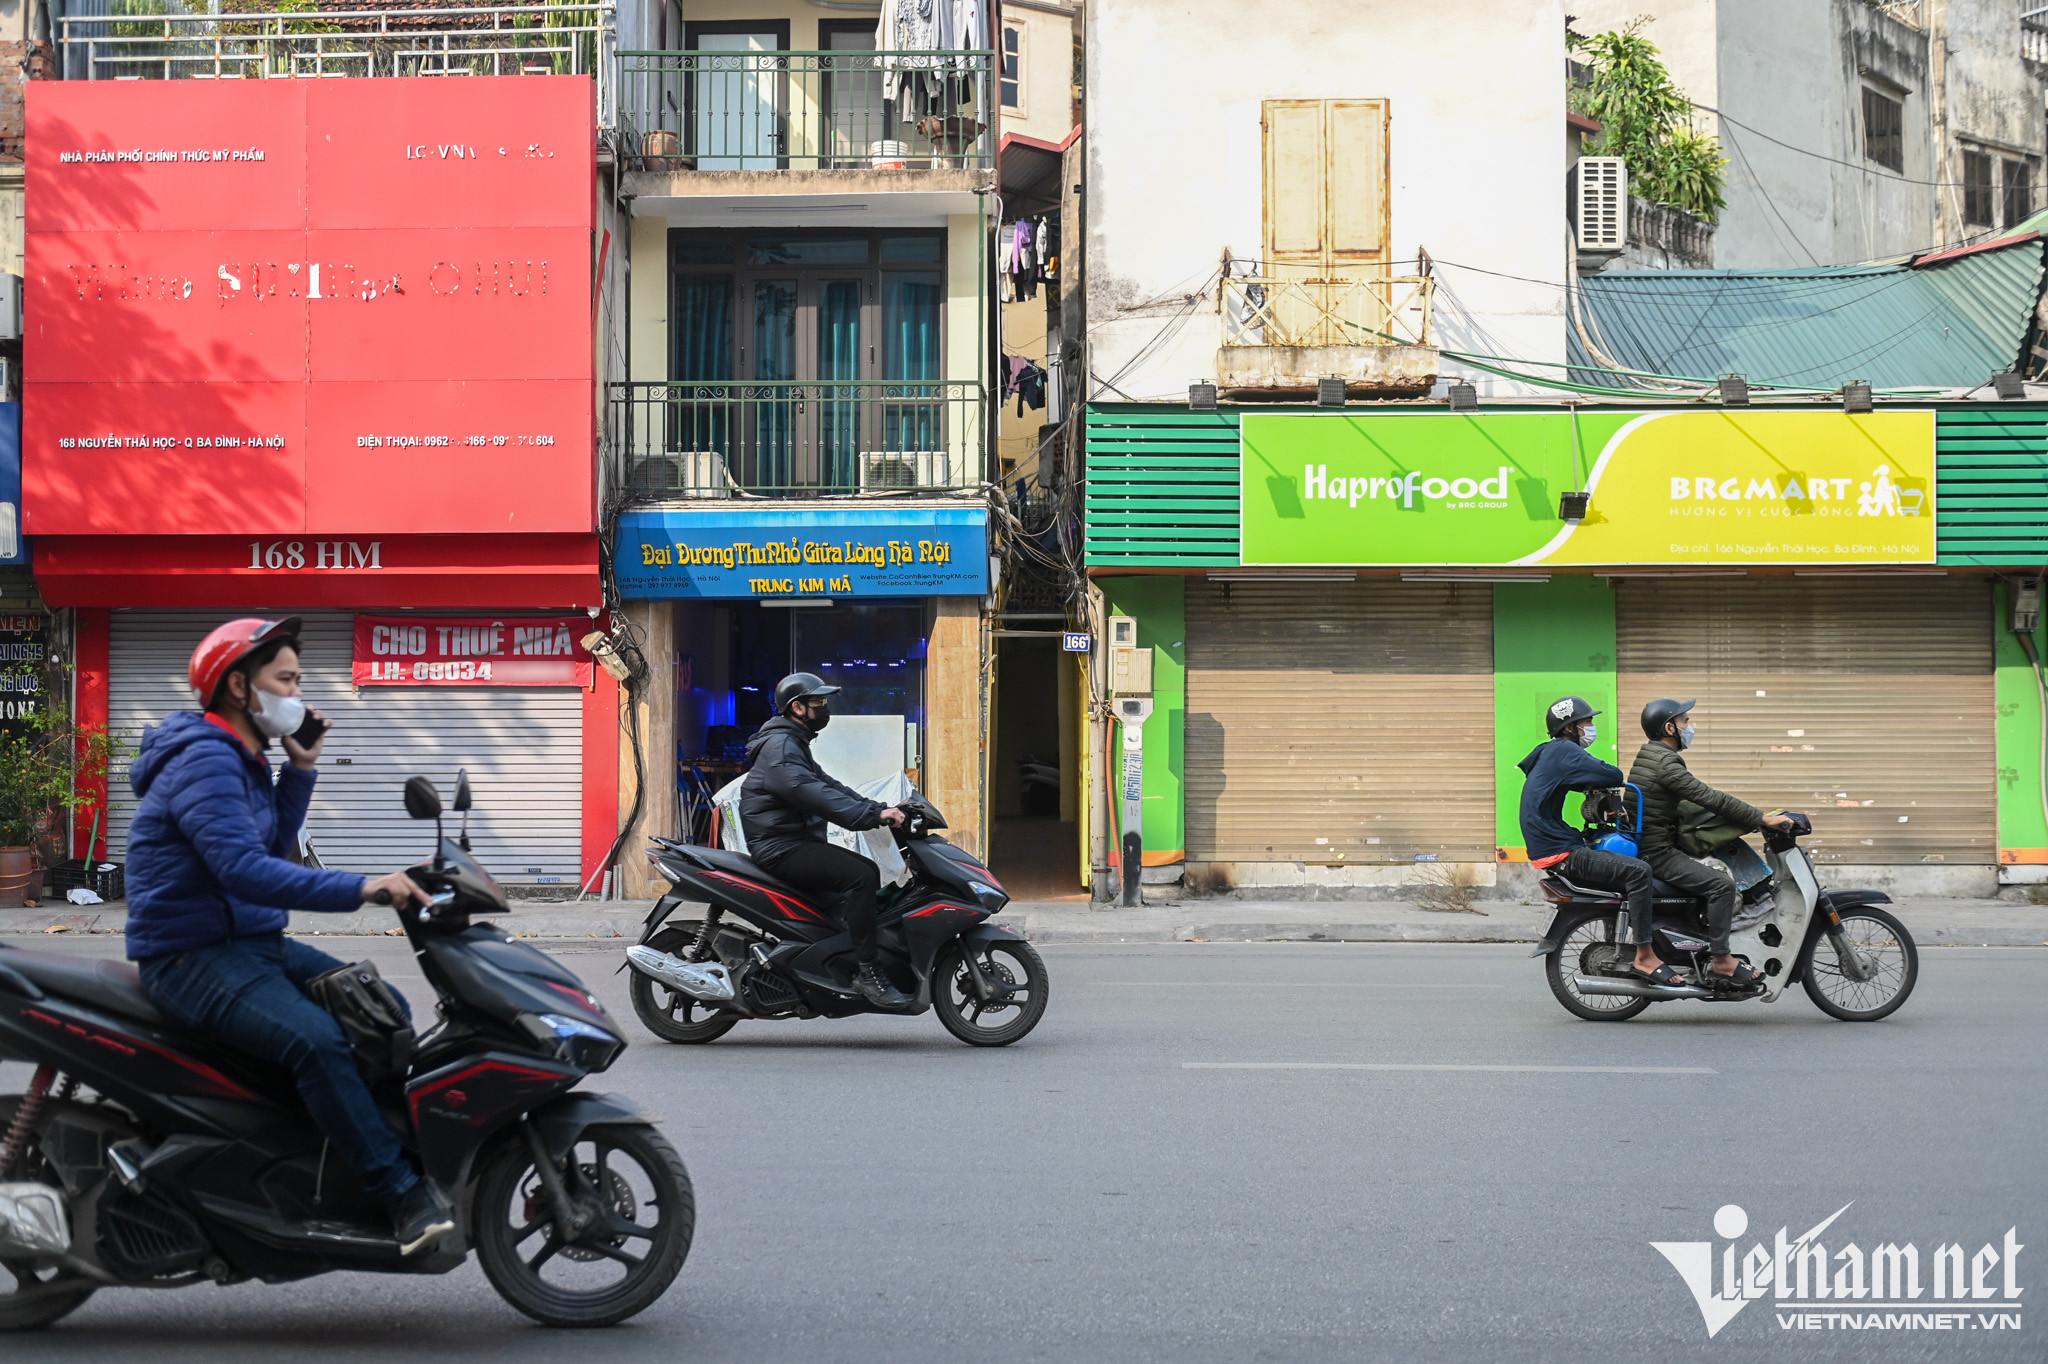 Rao vặt bán xe máy điện cũ tại Ninh Bình  Hotline 0916999522